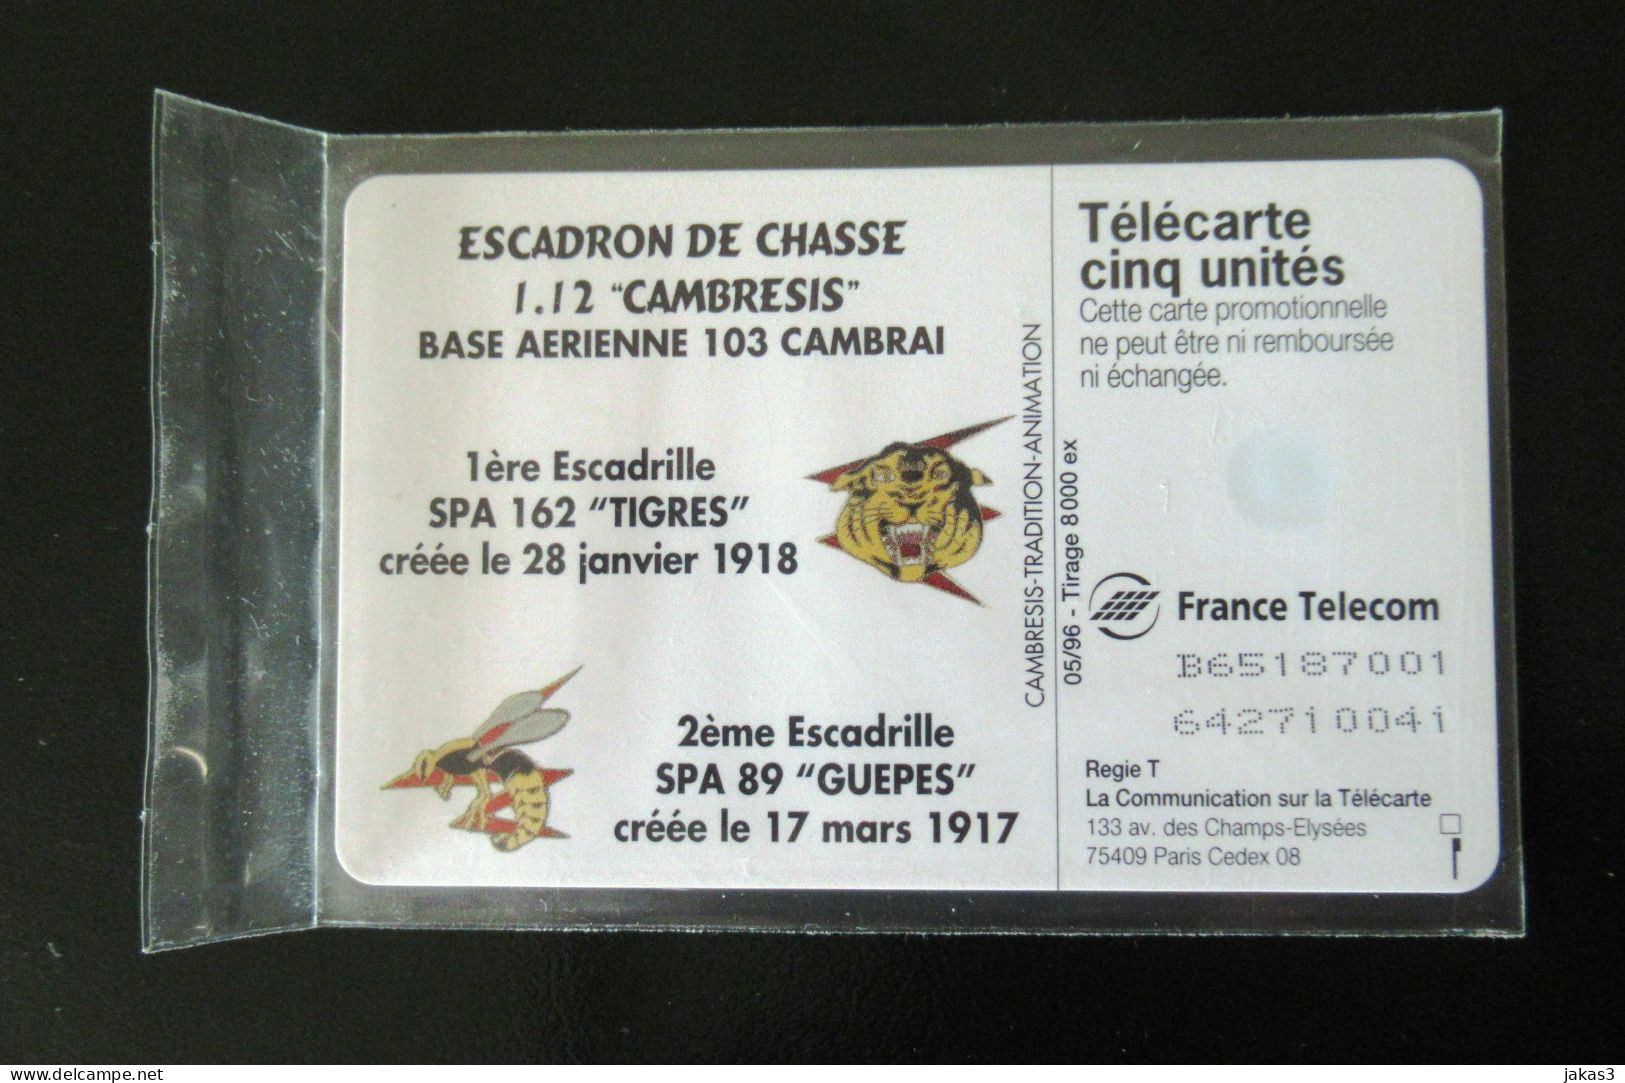 RARE TELECARTE 5 UNITES GN 235 ESCADRON CHASSE CAMBRESIS PARFAIT ETAT - 5 Unités